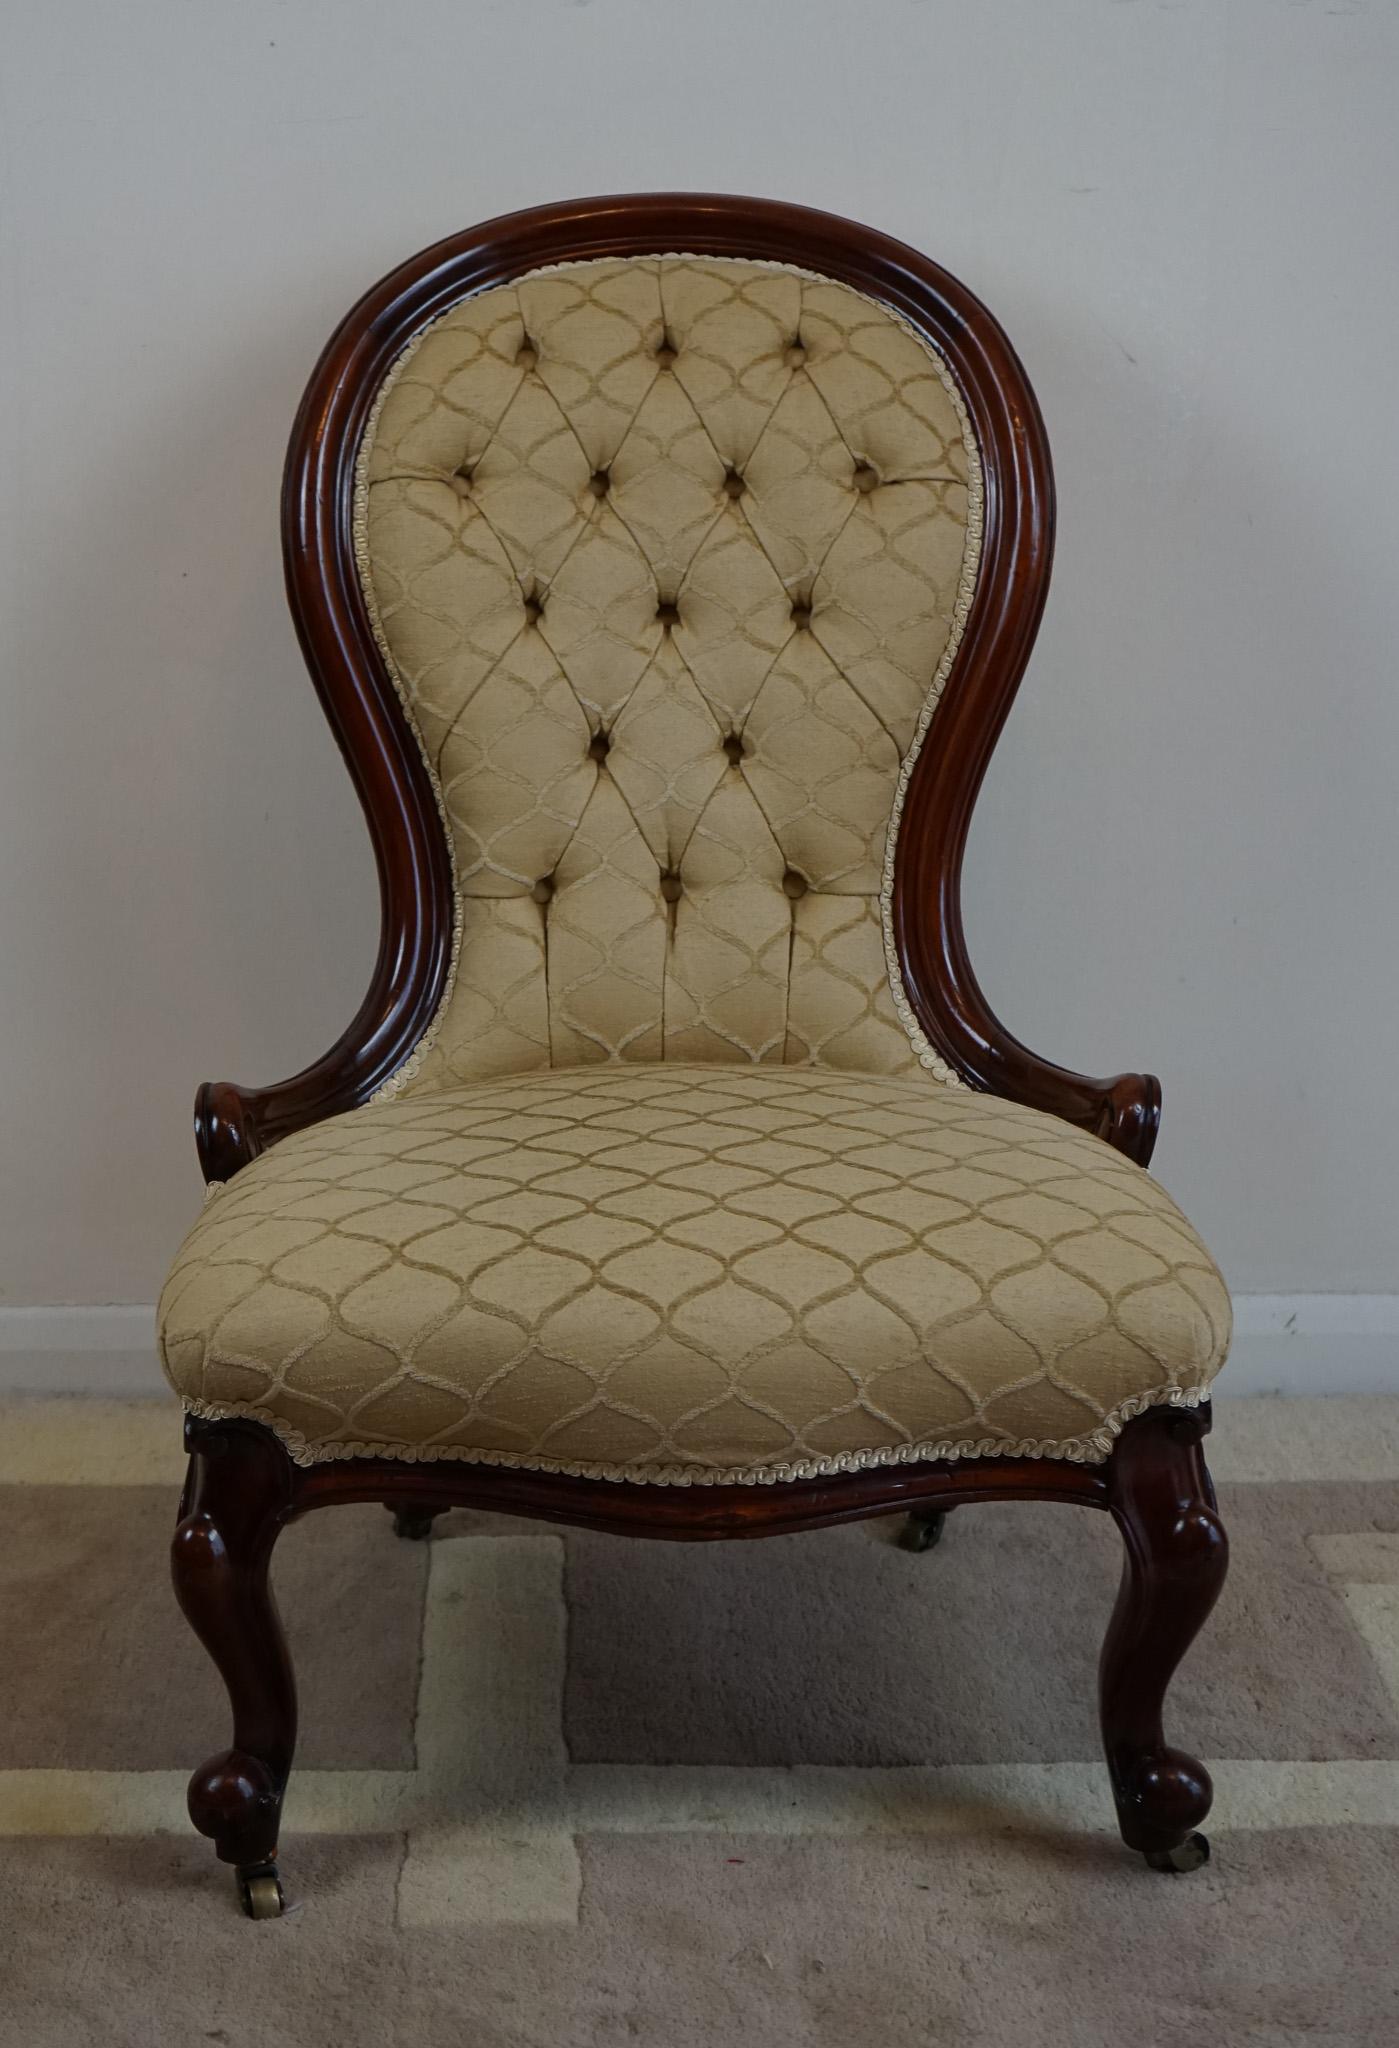 Il s'agit d'un fauteuil de salon classique de style victorien, datant du milieu du 19e siècle, vers 1840. 
Reposant sur de solides pieds cabriole obliques.
Genou bulbeux et orteil en volute
Pattes arrière en forme et inclinées
Rail de siège avant en